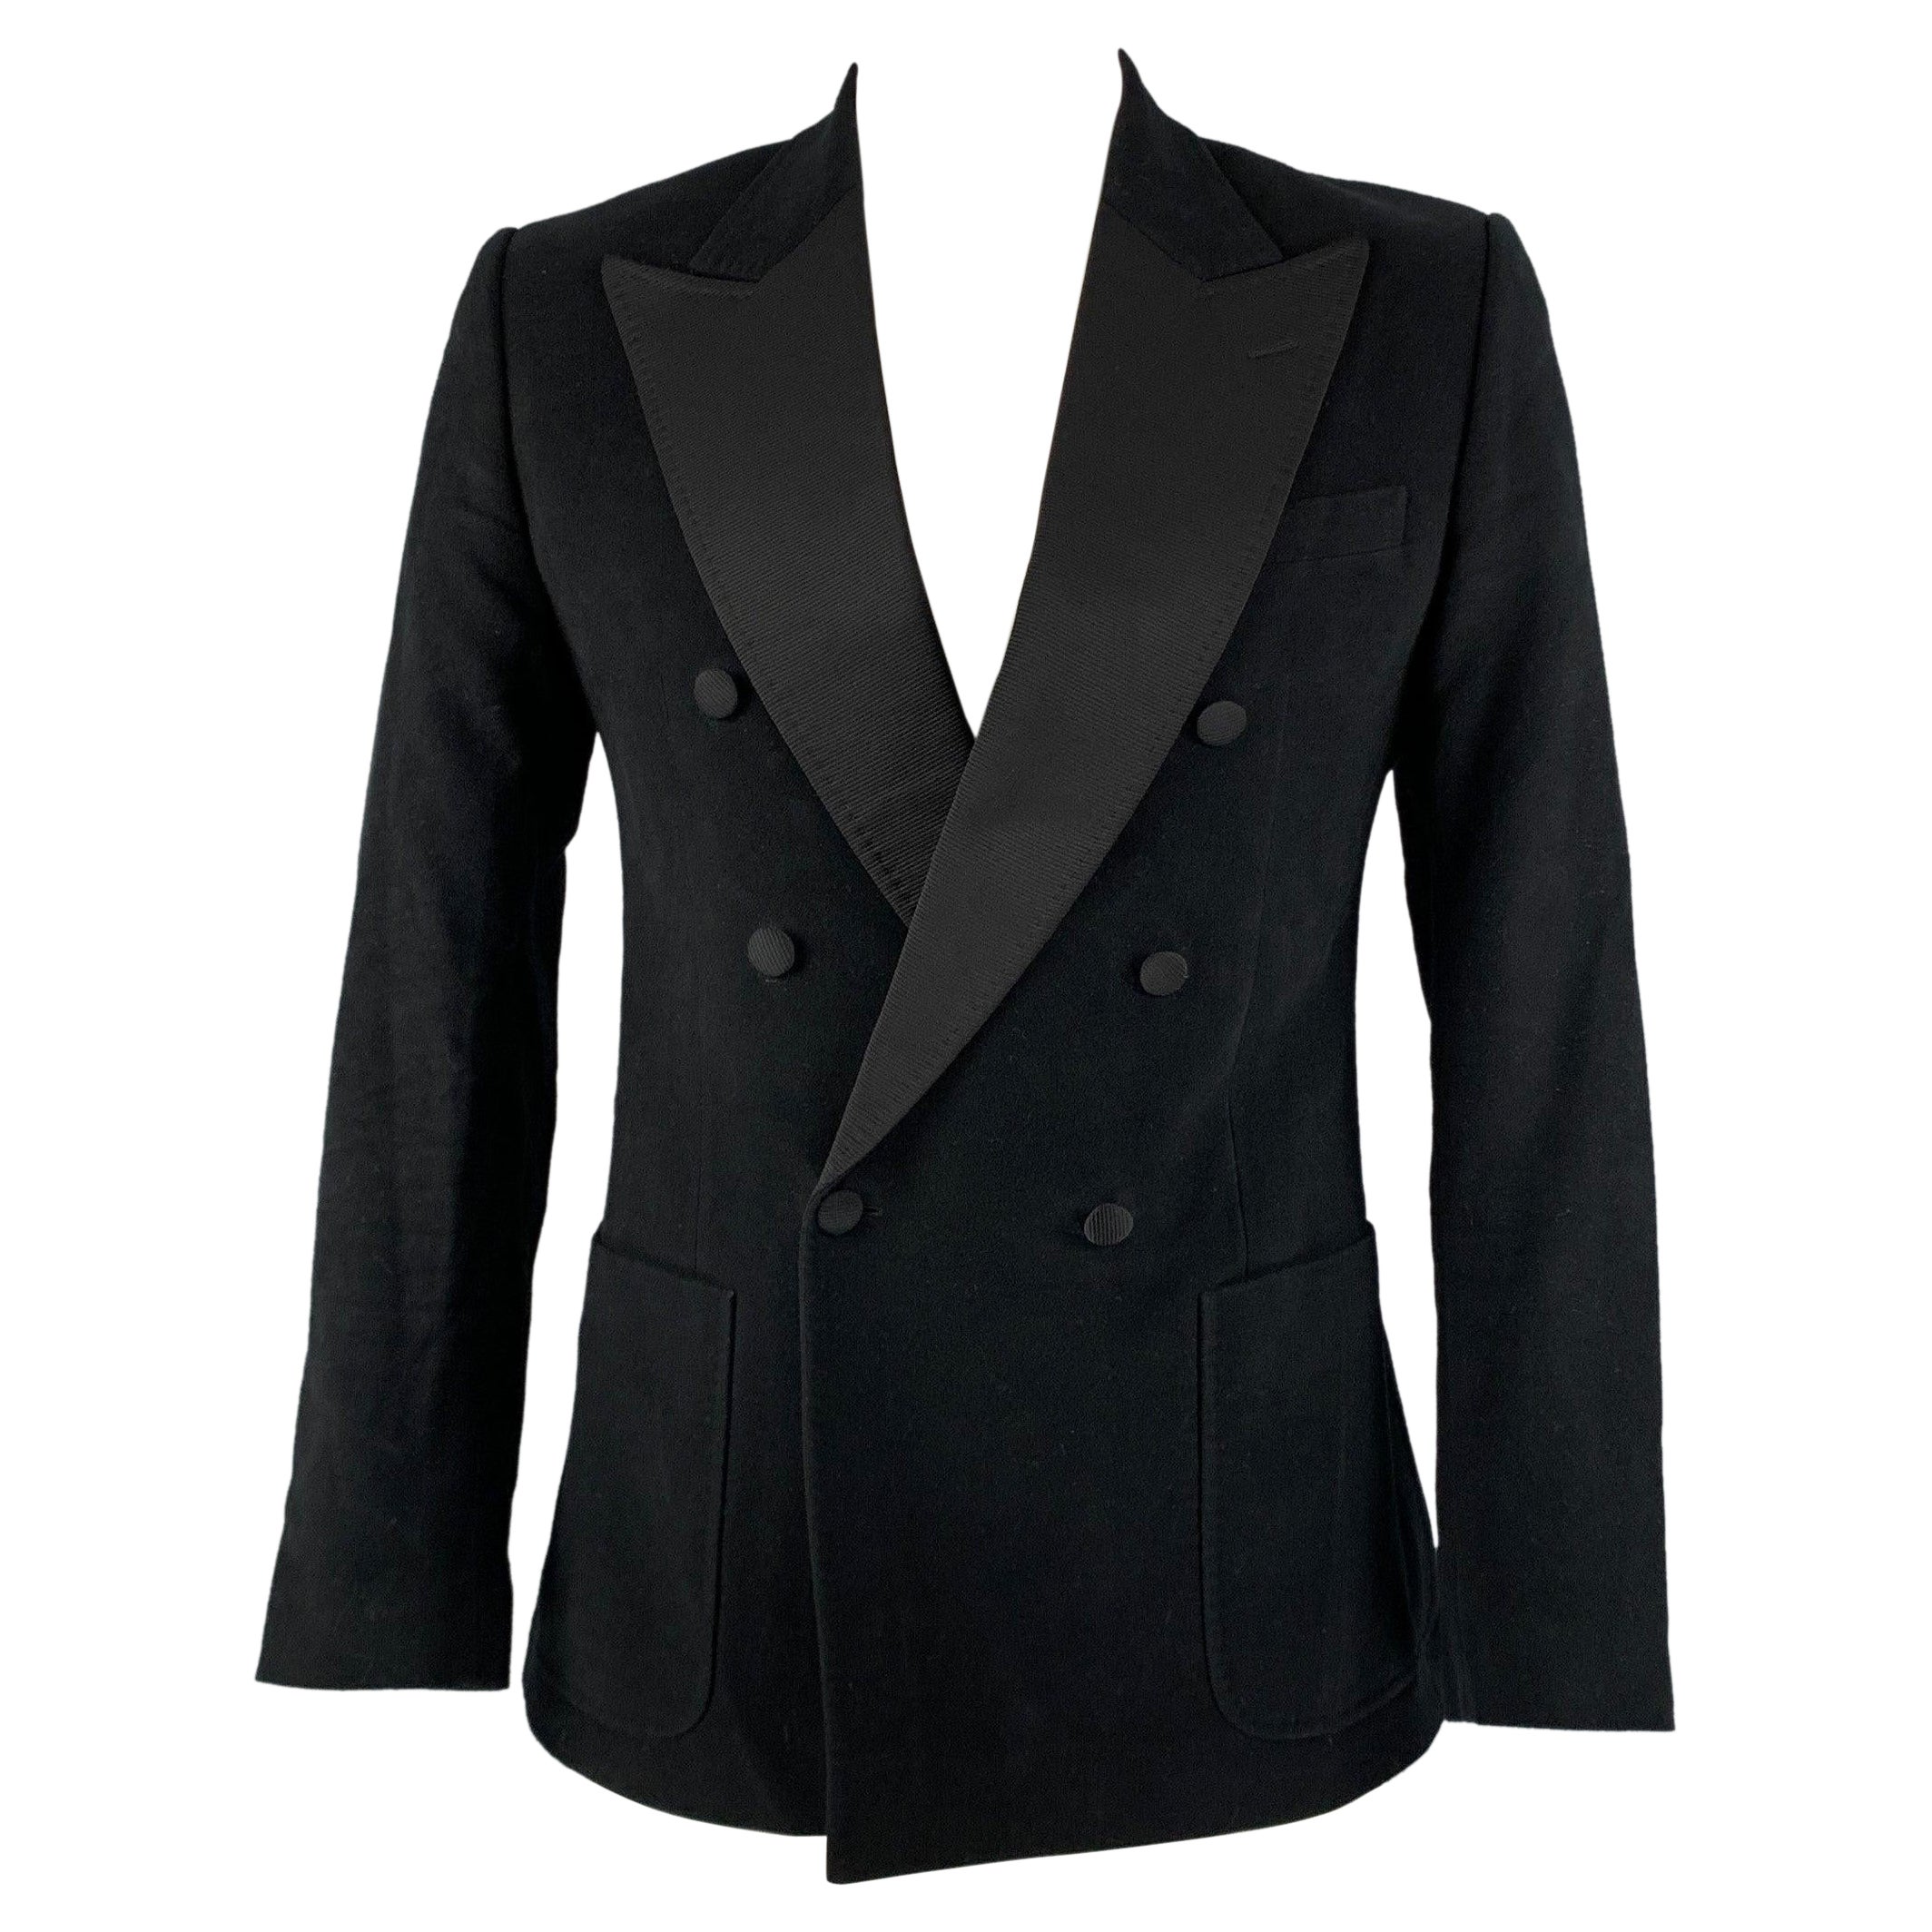 DOLCE & GABBANA Size 42 Black Cotton Blend Peak Lapel Sport Coat For Sale